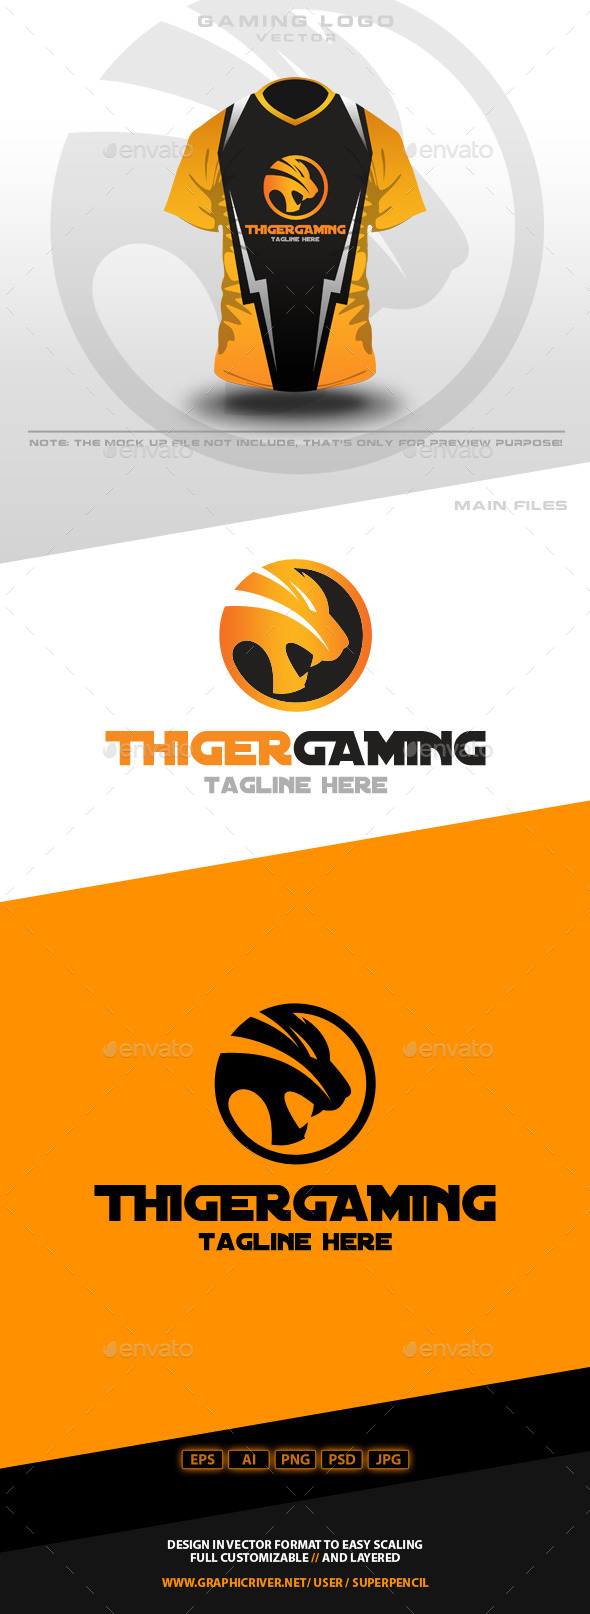 Thiger Gaming Logo